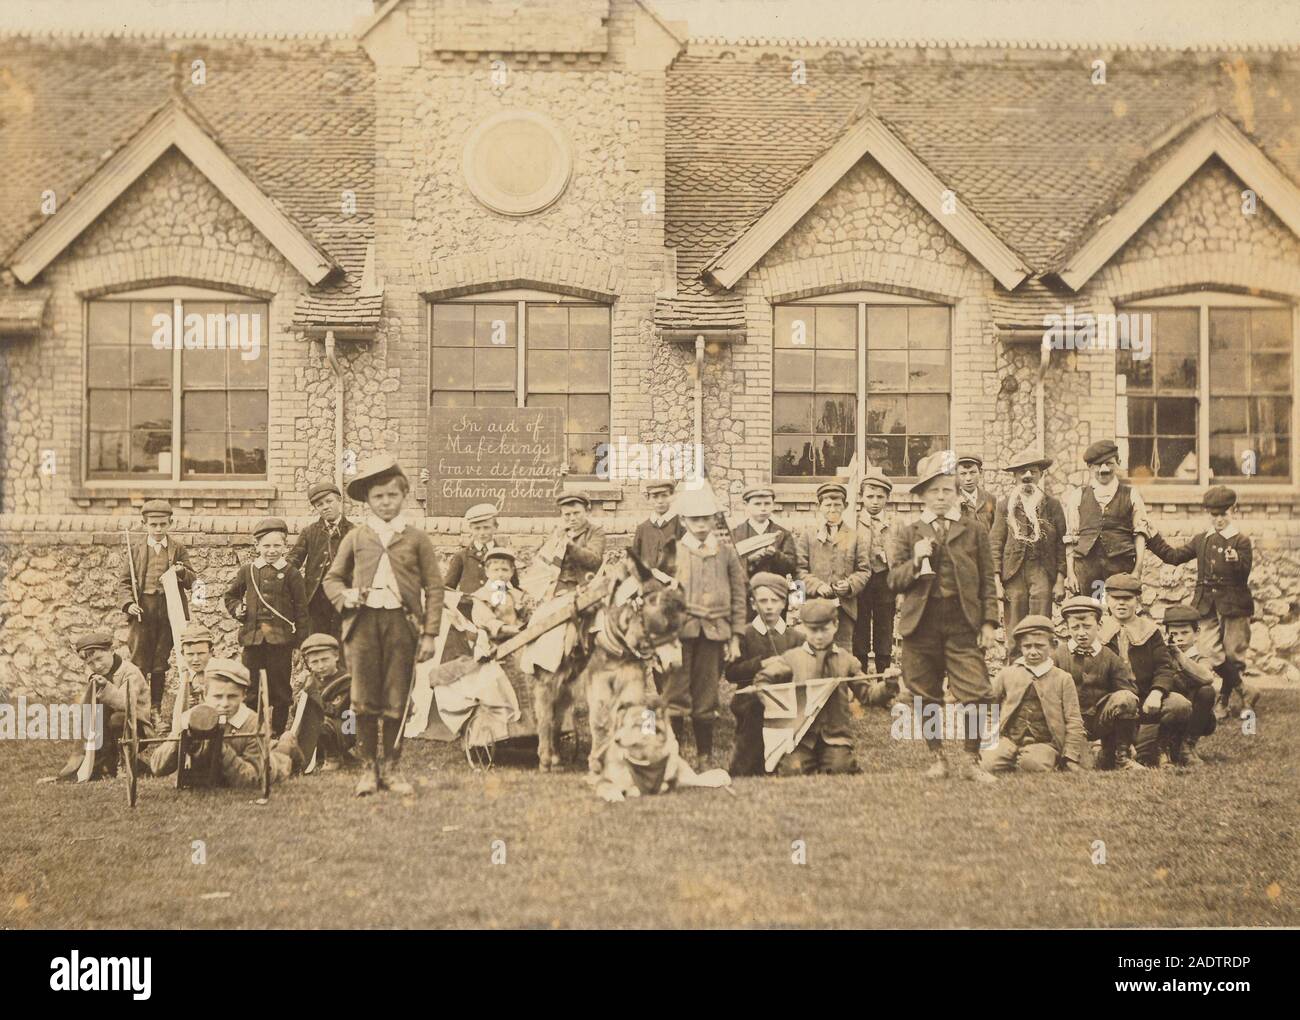 Archivio storico immagine di bambini da Charing School nel Kent di prendere parte ad un evento di raccolta fondi per il Fondo di Mafeking, durante la guerra di Boer Foto Stock